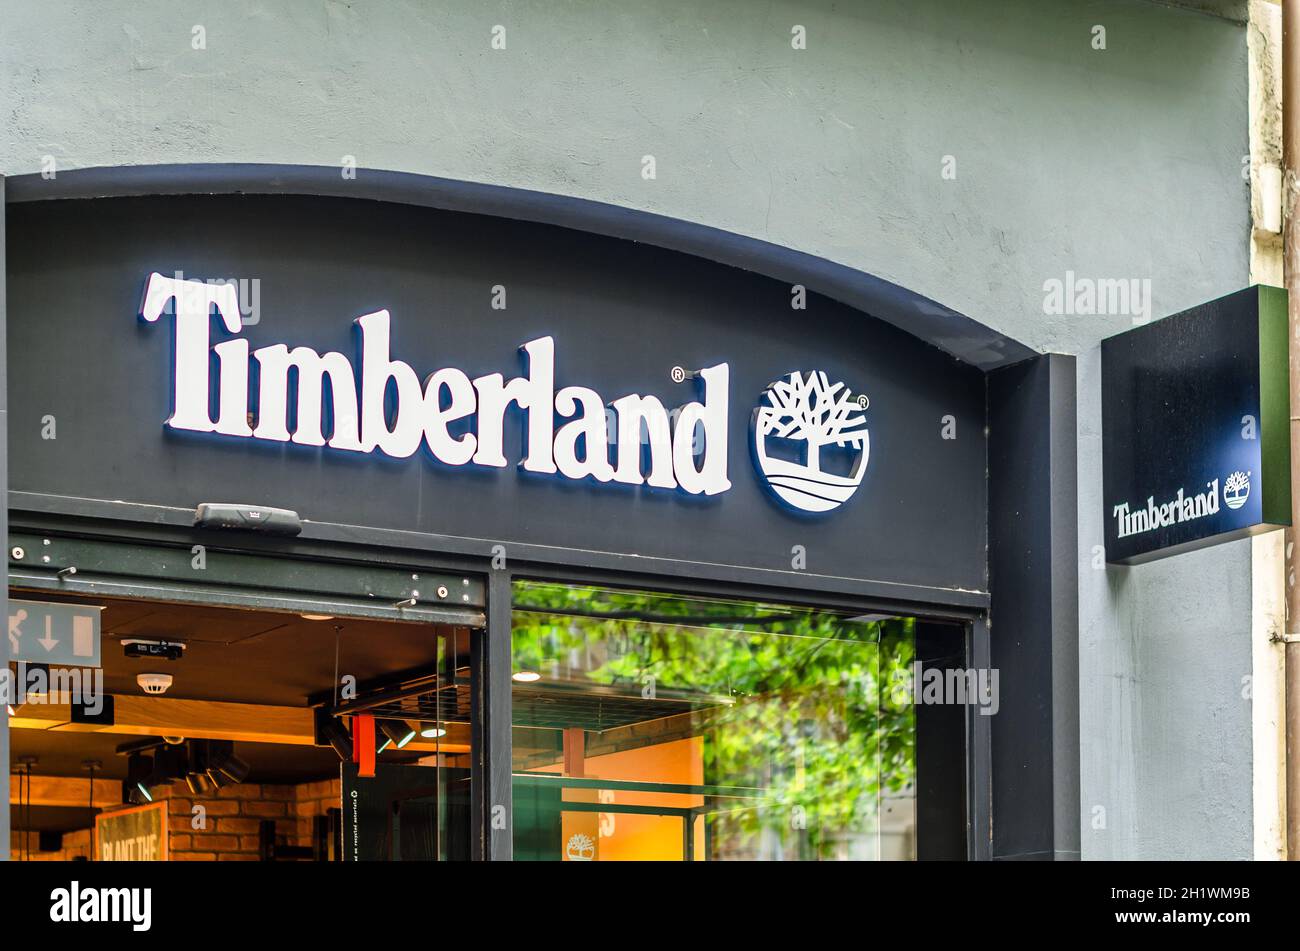 Timberland store immagini e fotografie stock ad alta risoluzione - Alamy